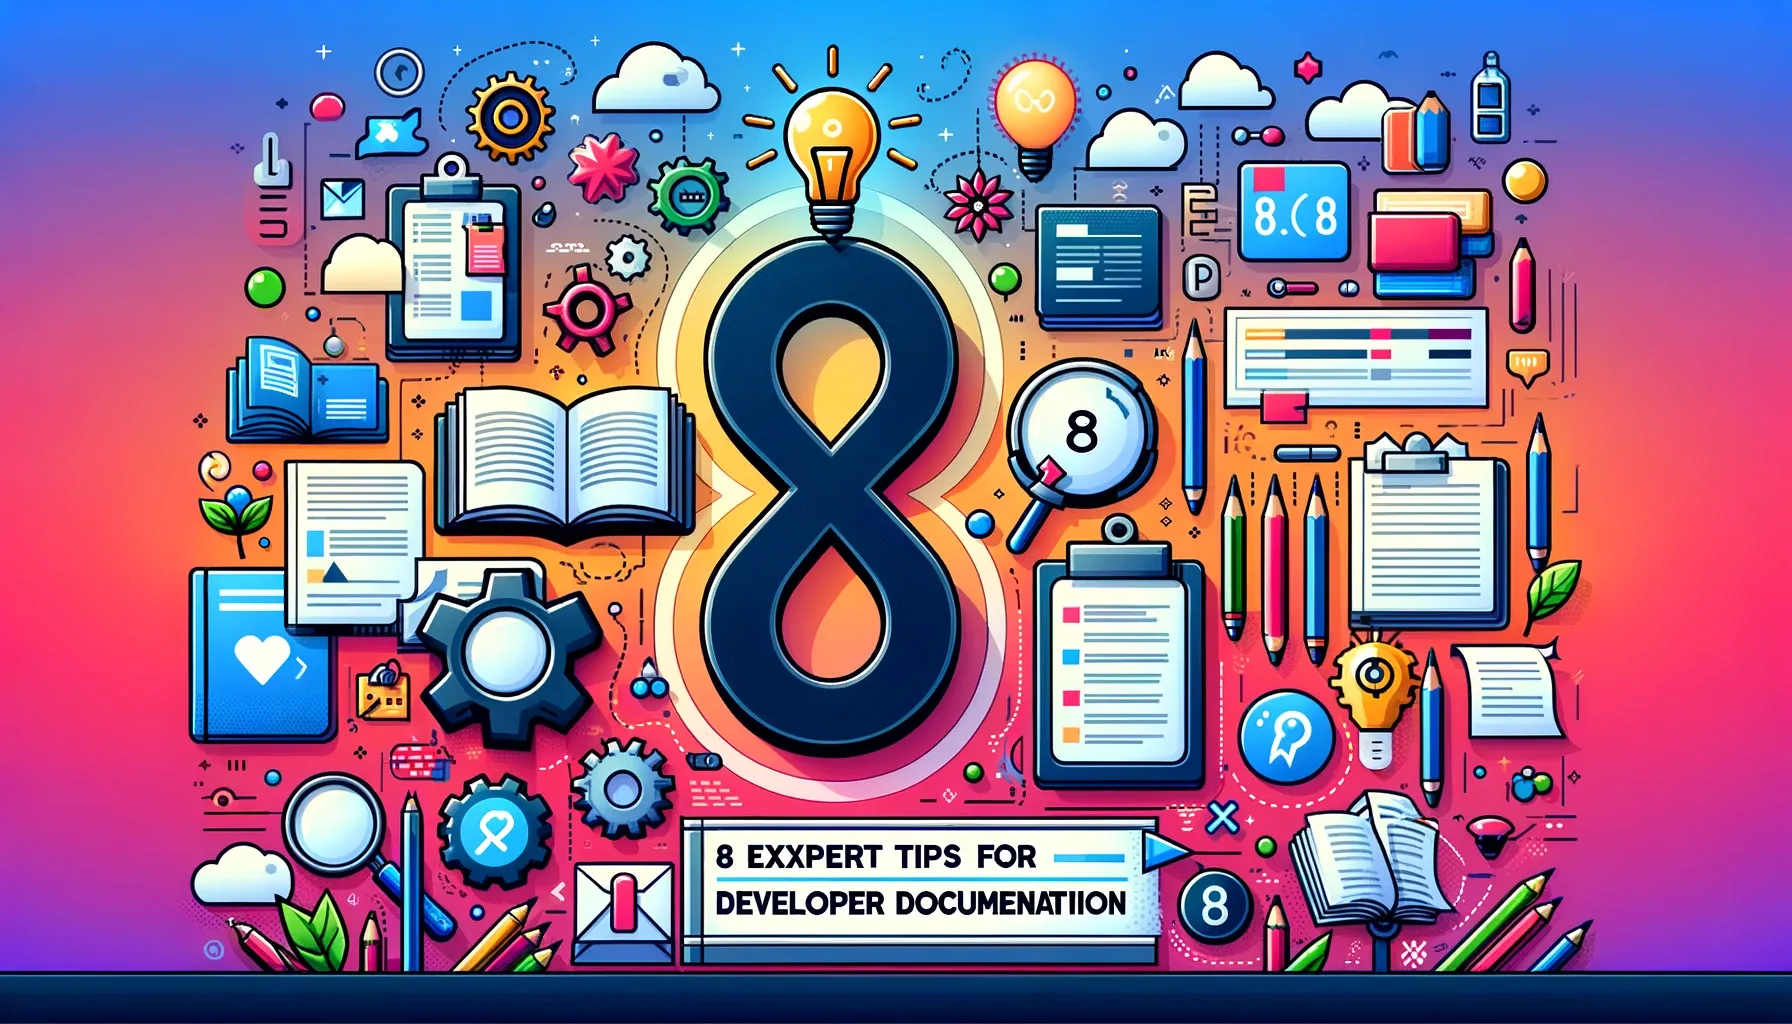 8 Expert Tips for Internal Developer Documentation